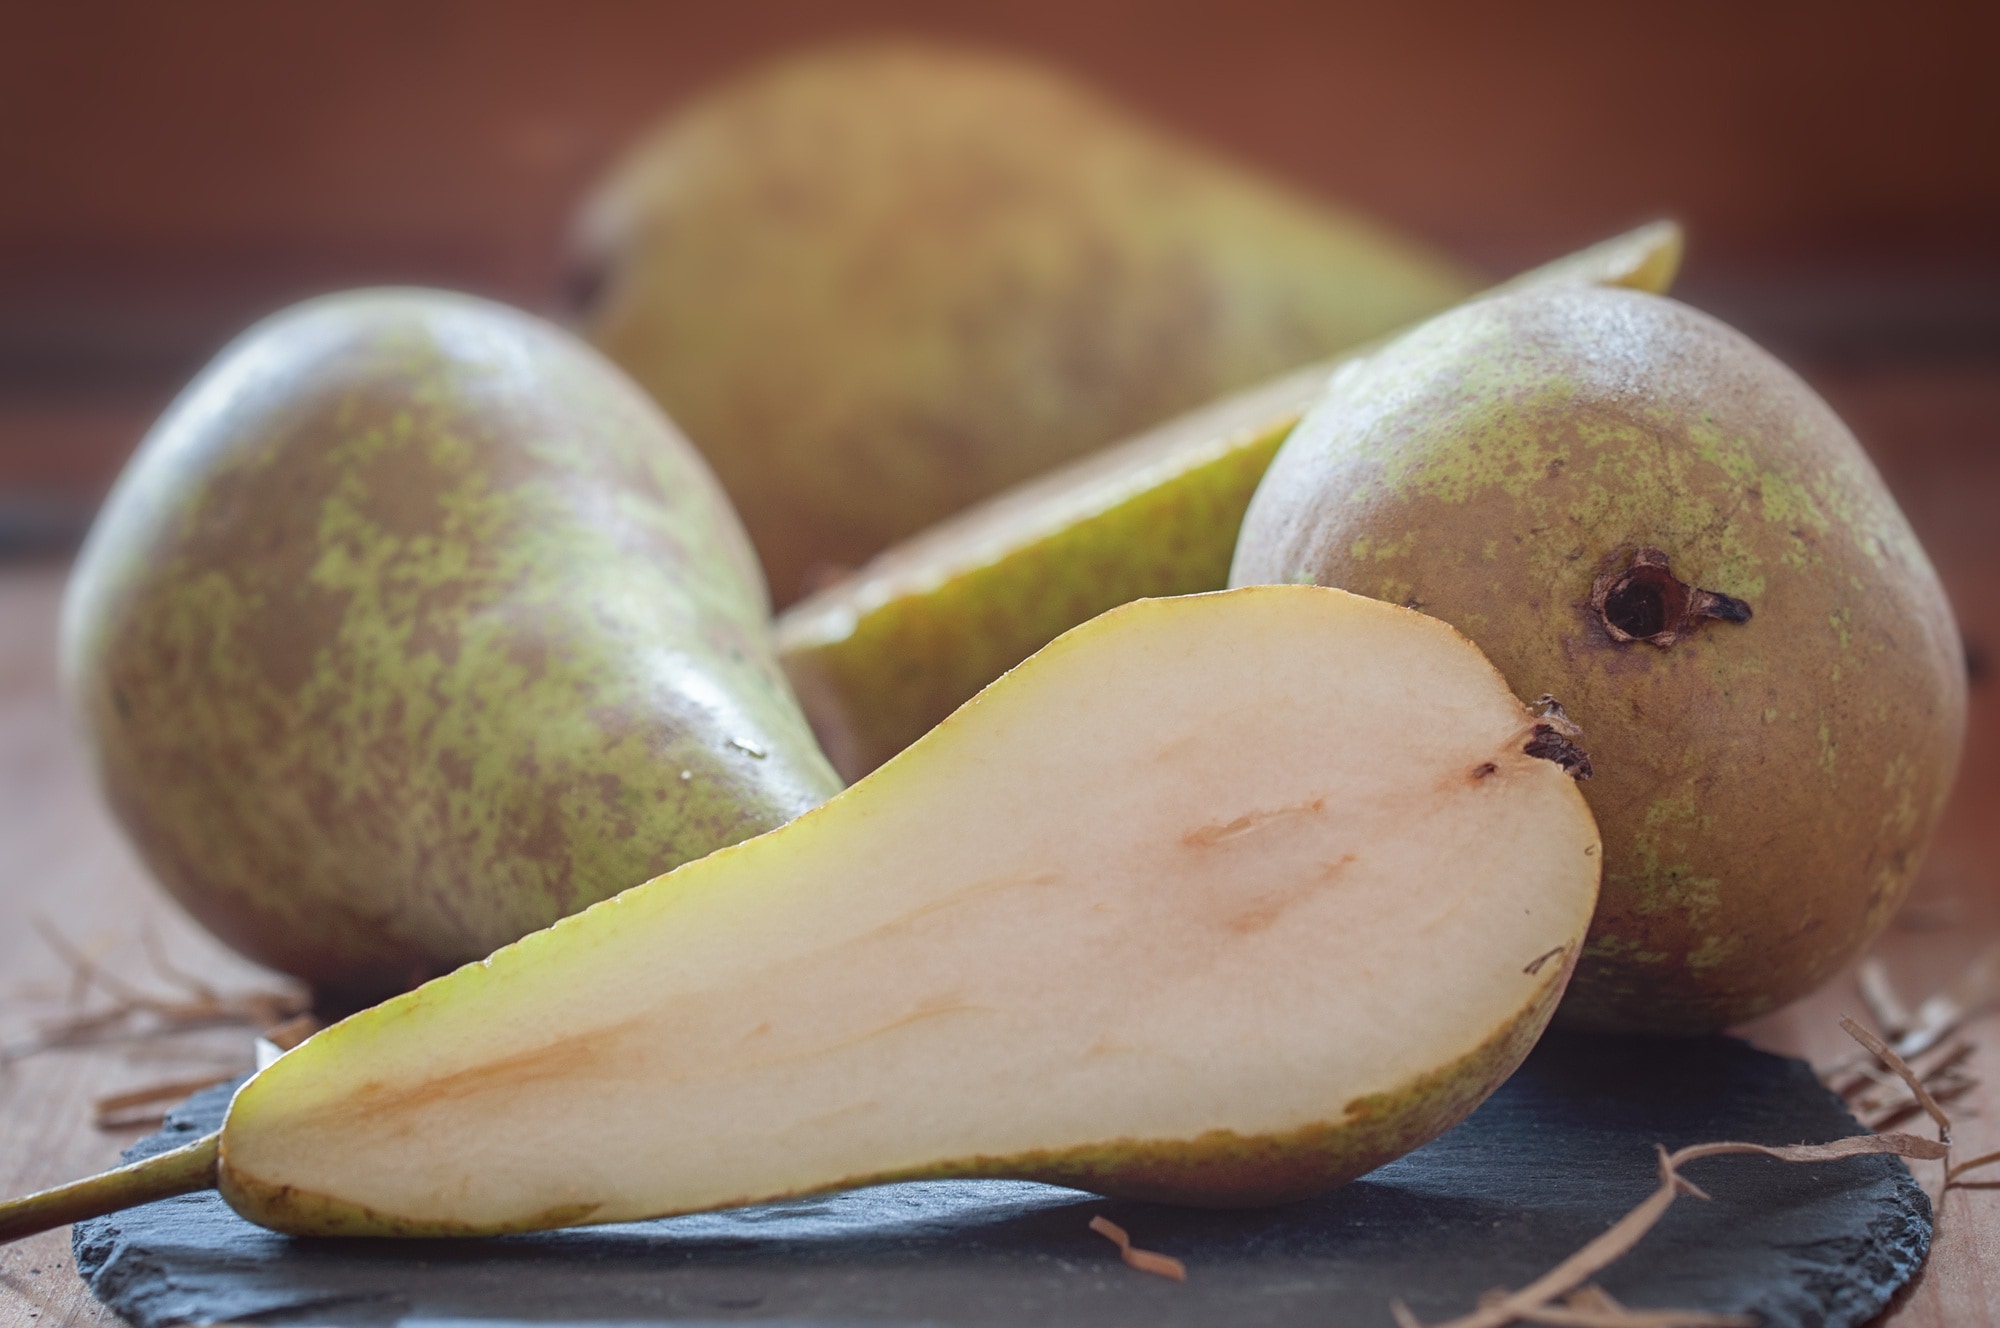 green pear shape fruit